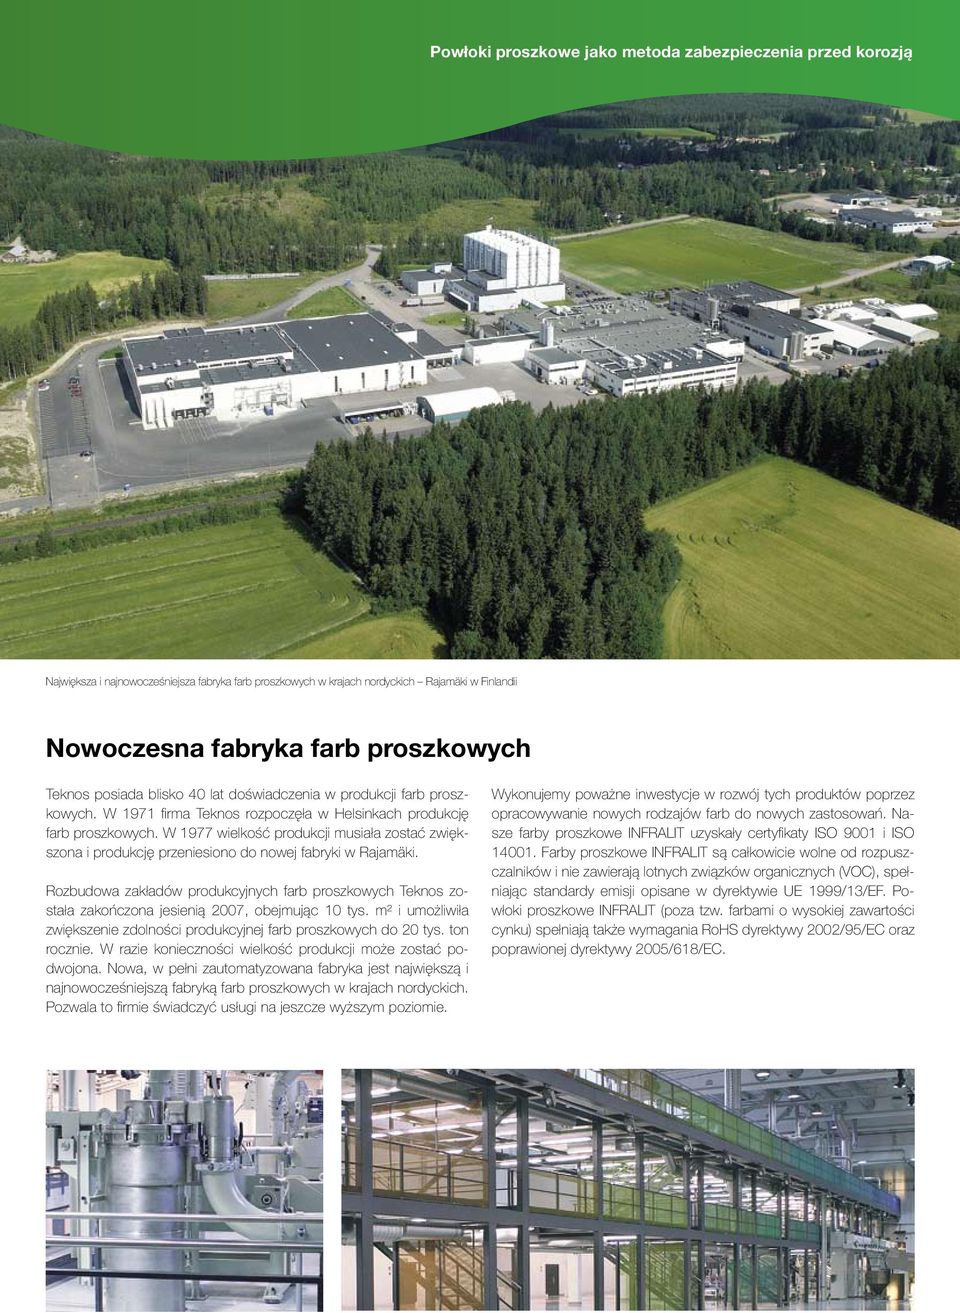 W 1977 wielkość produkcji musiała zostać zwiększona i produkcję przeniesiono do nowej fabryki w Rajamäki.